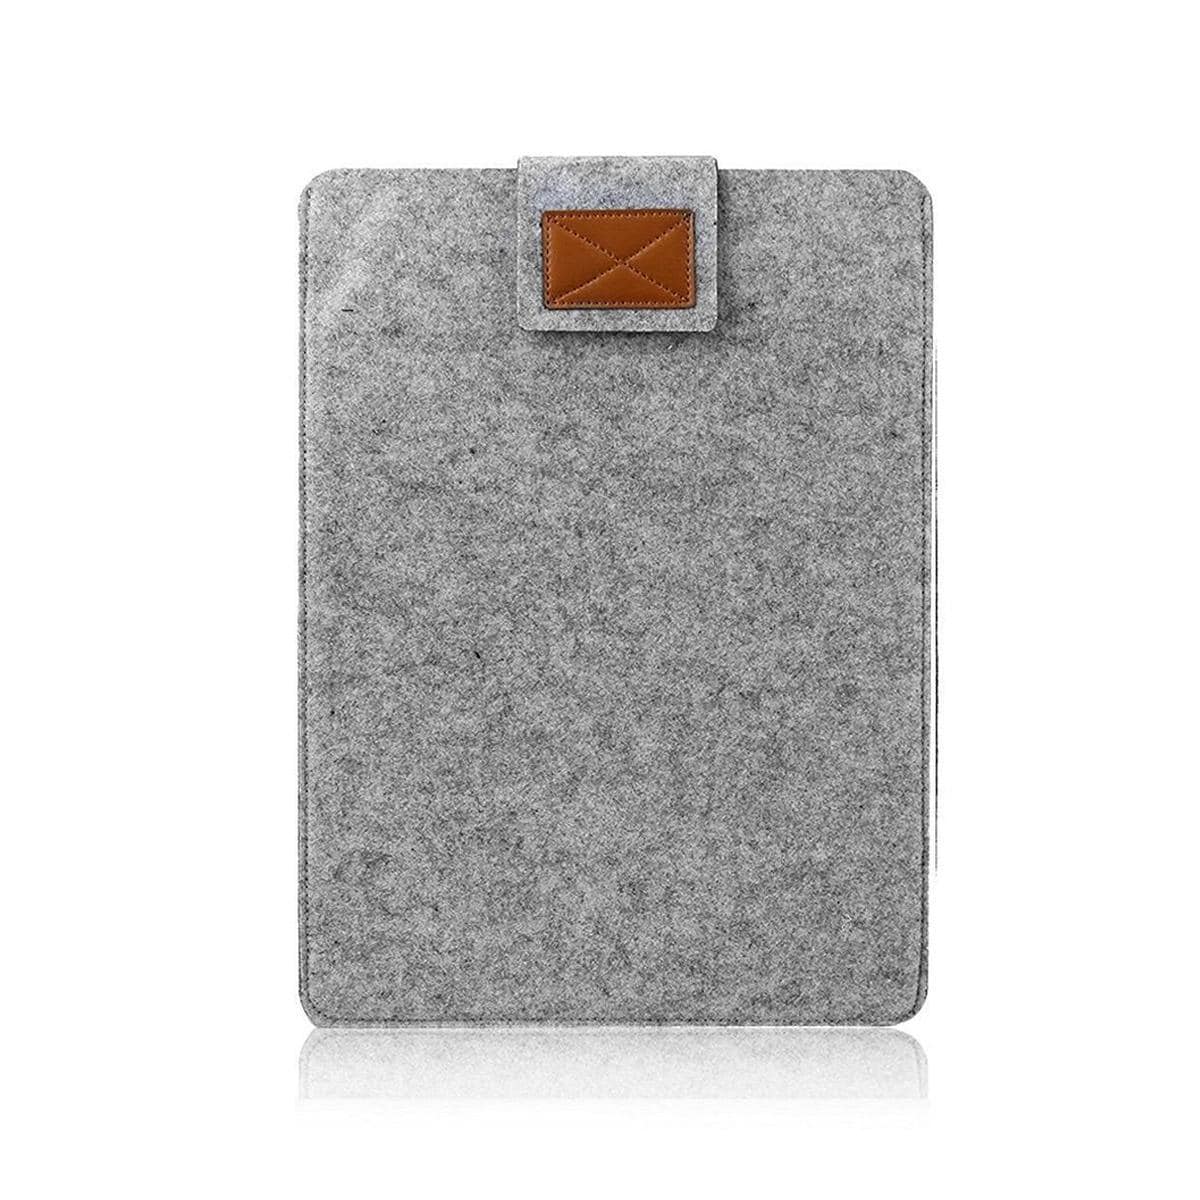 Laptopveske 13 tommer for Macbook Air / Pro 13 Ull filt grå Grå